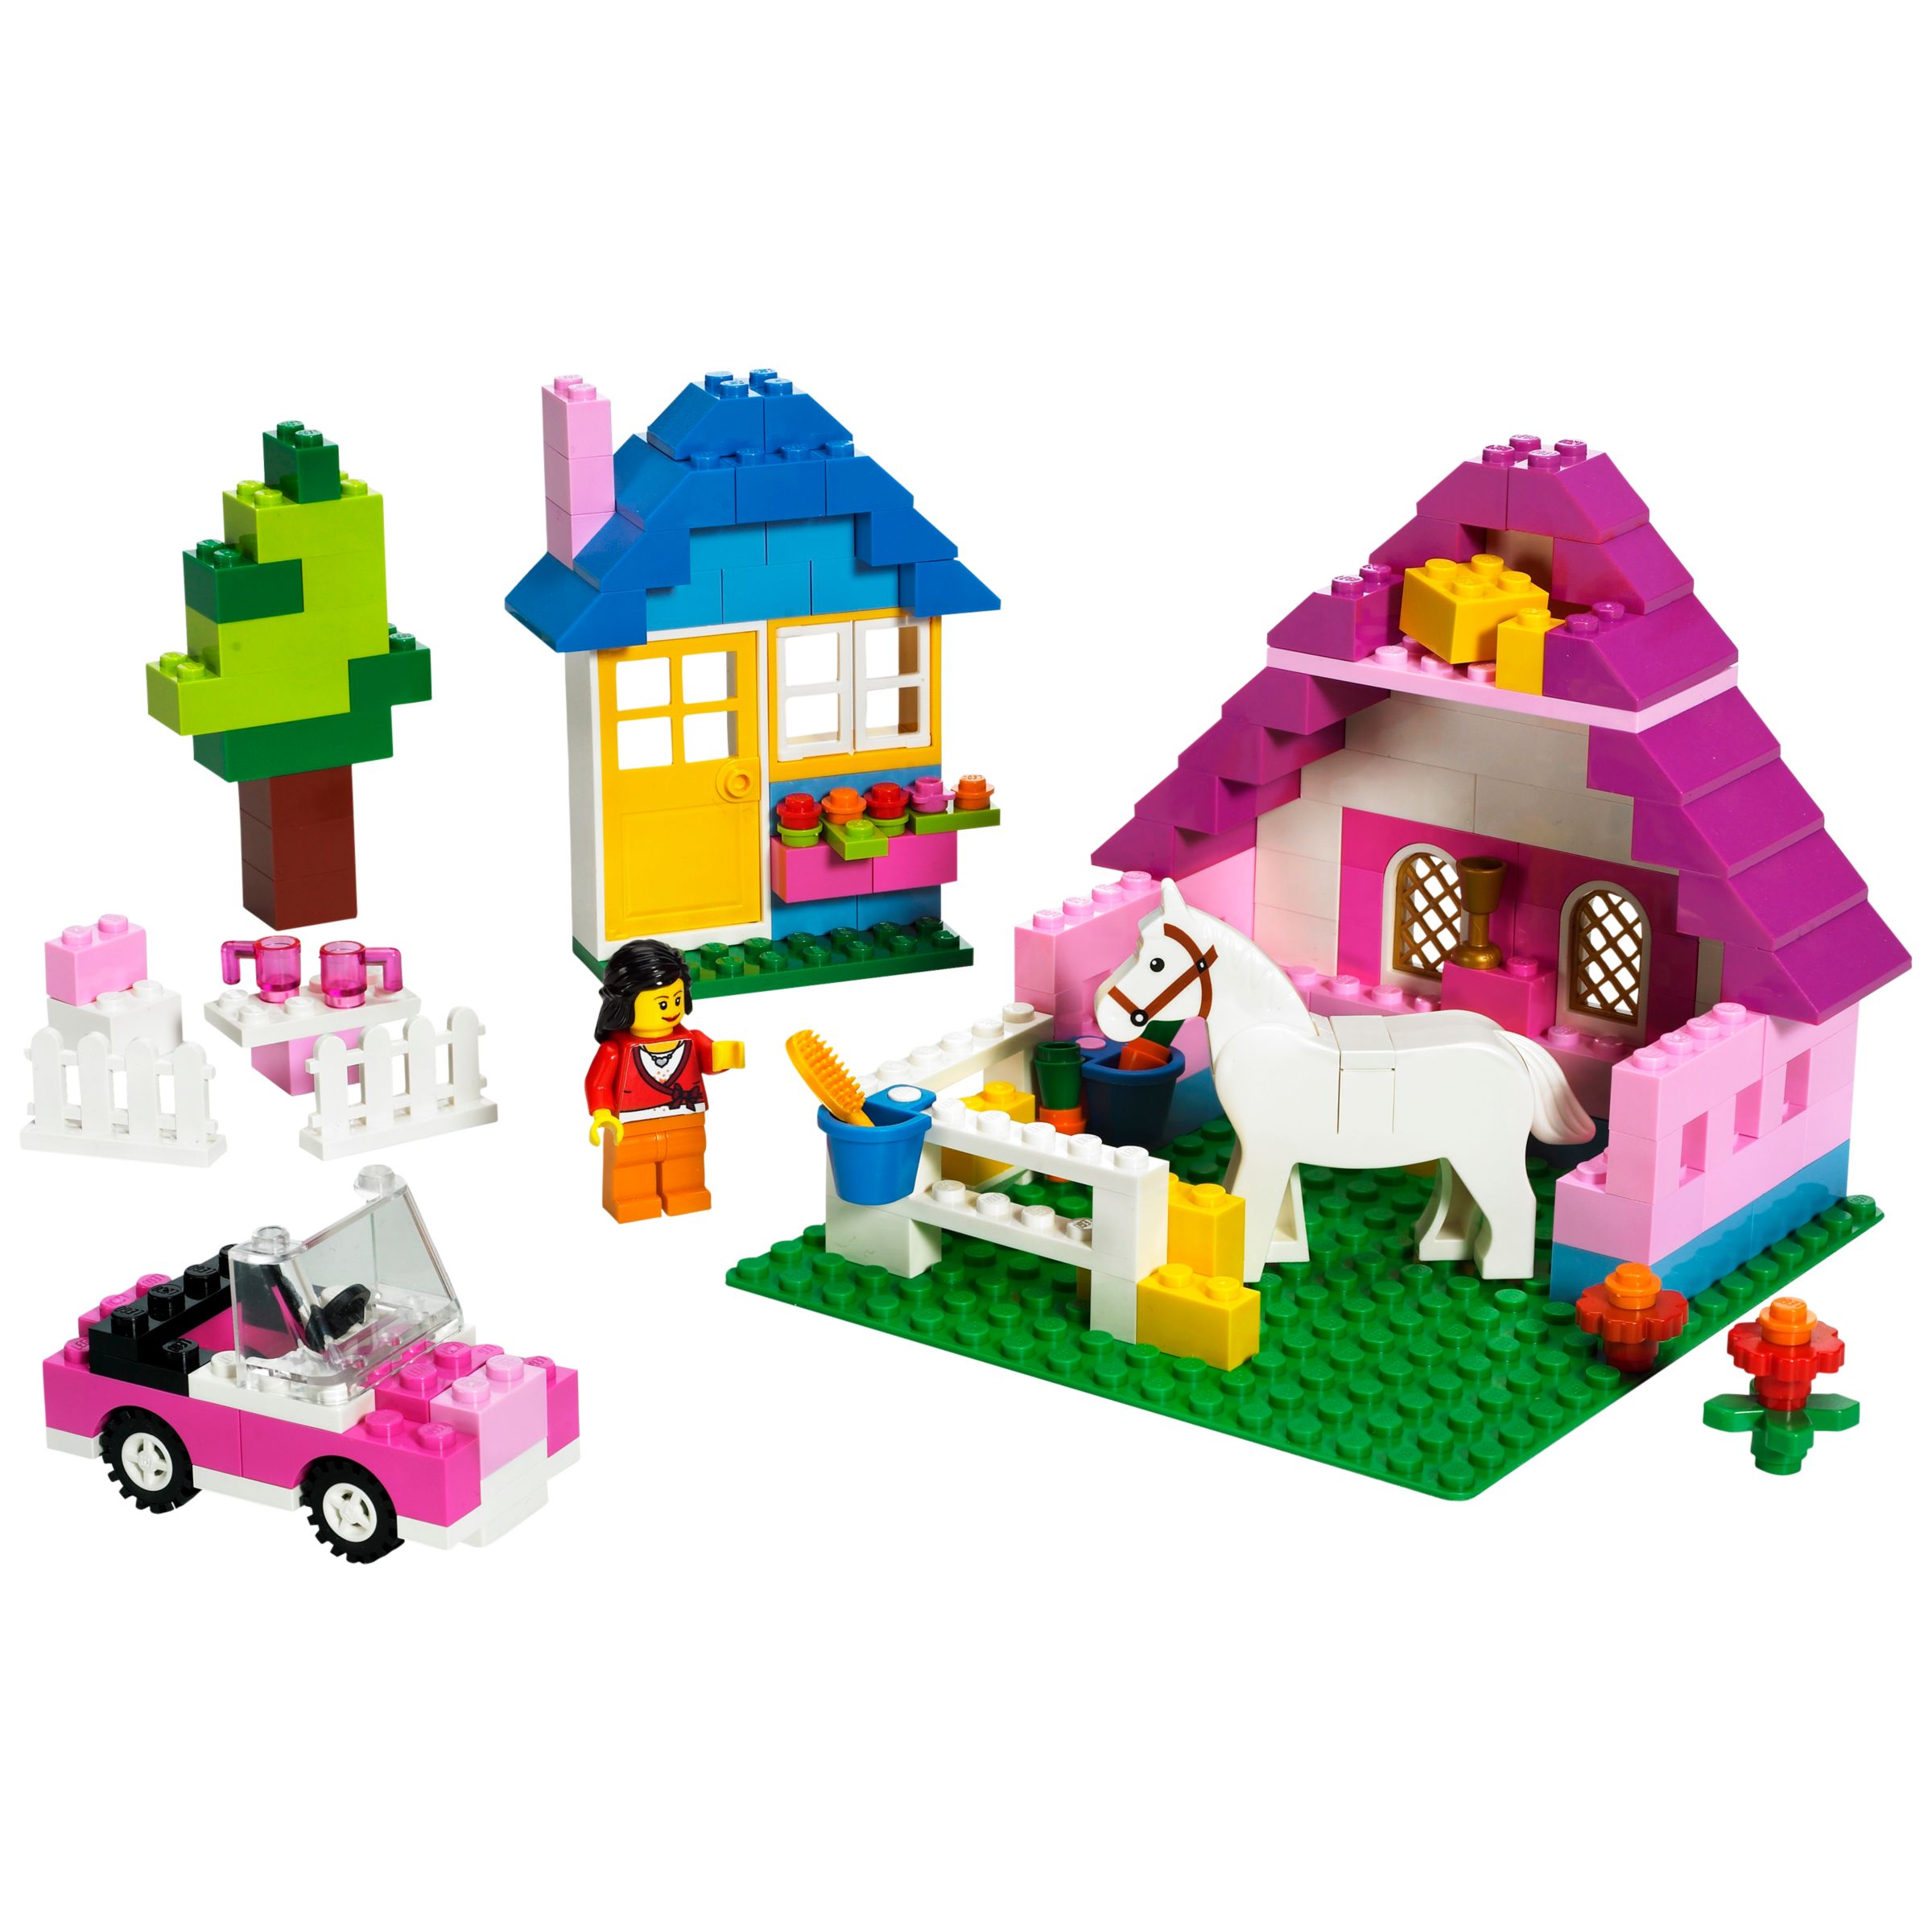 pink lego sets